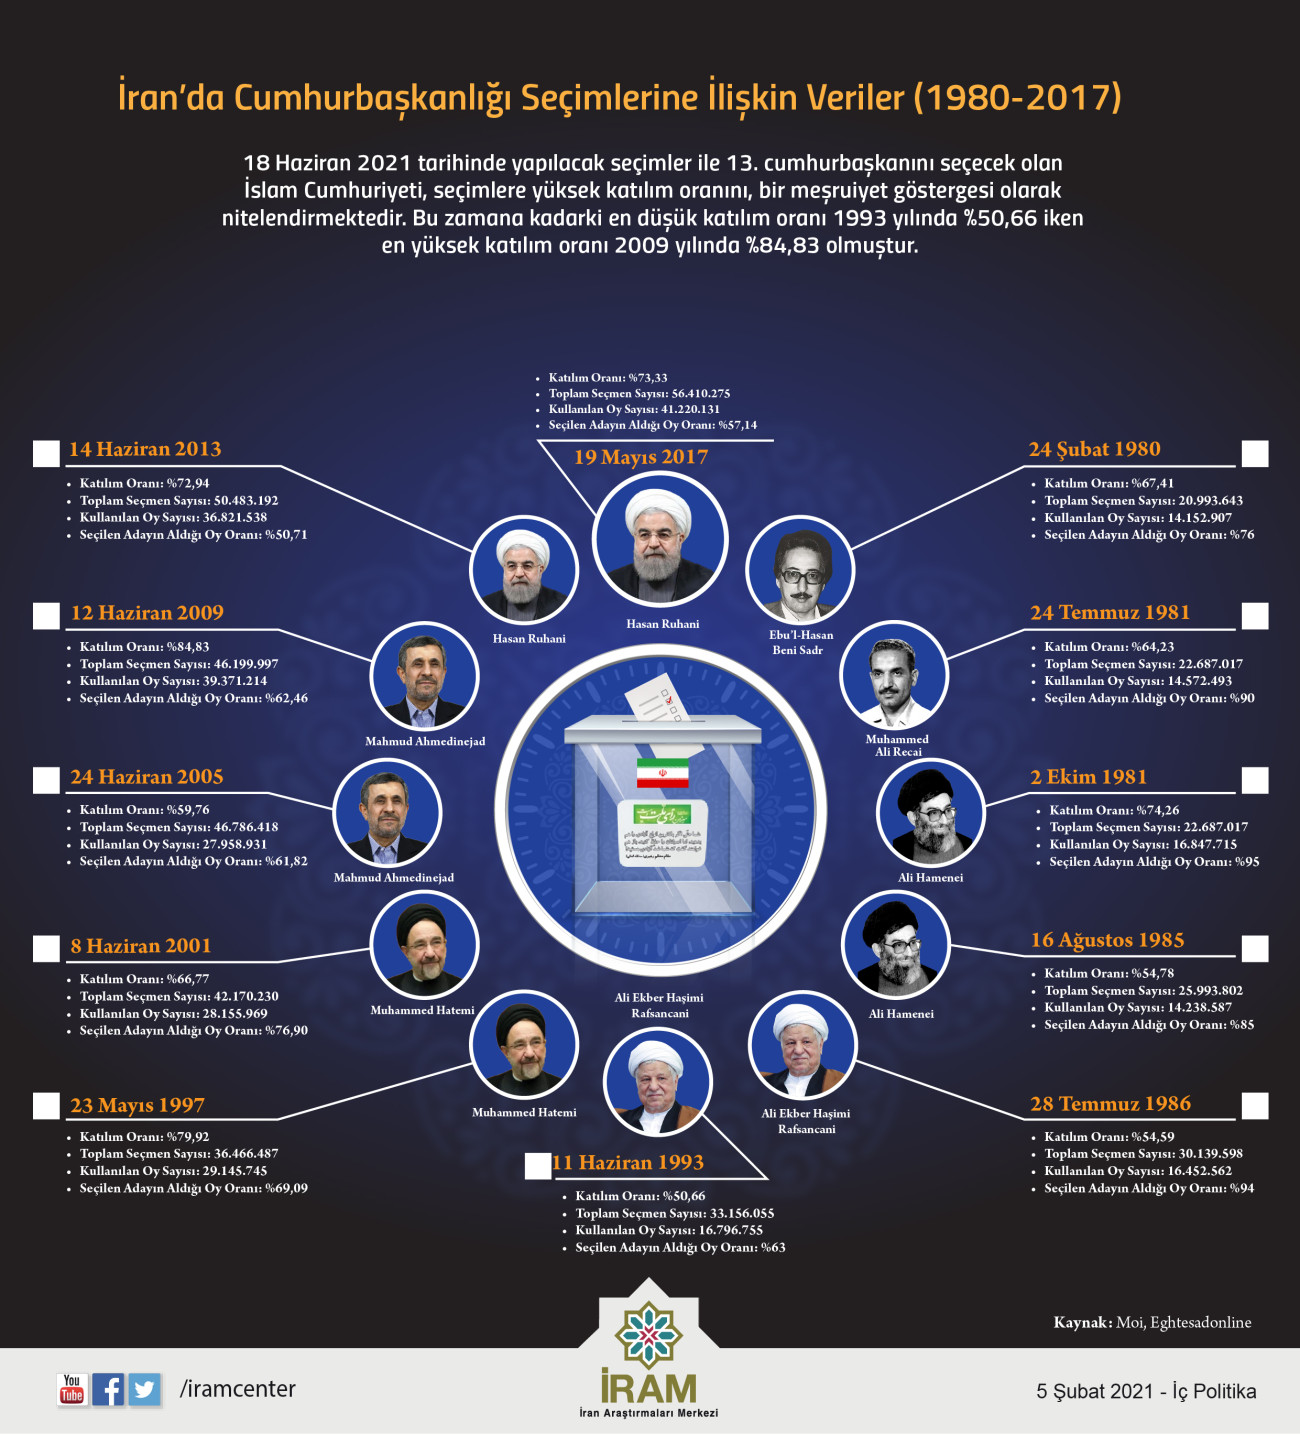 İran’da Cumhurbaşkanlığı Seçimlerine İlişkin Veriler (1980-2017)